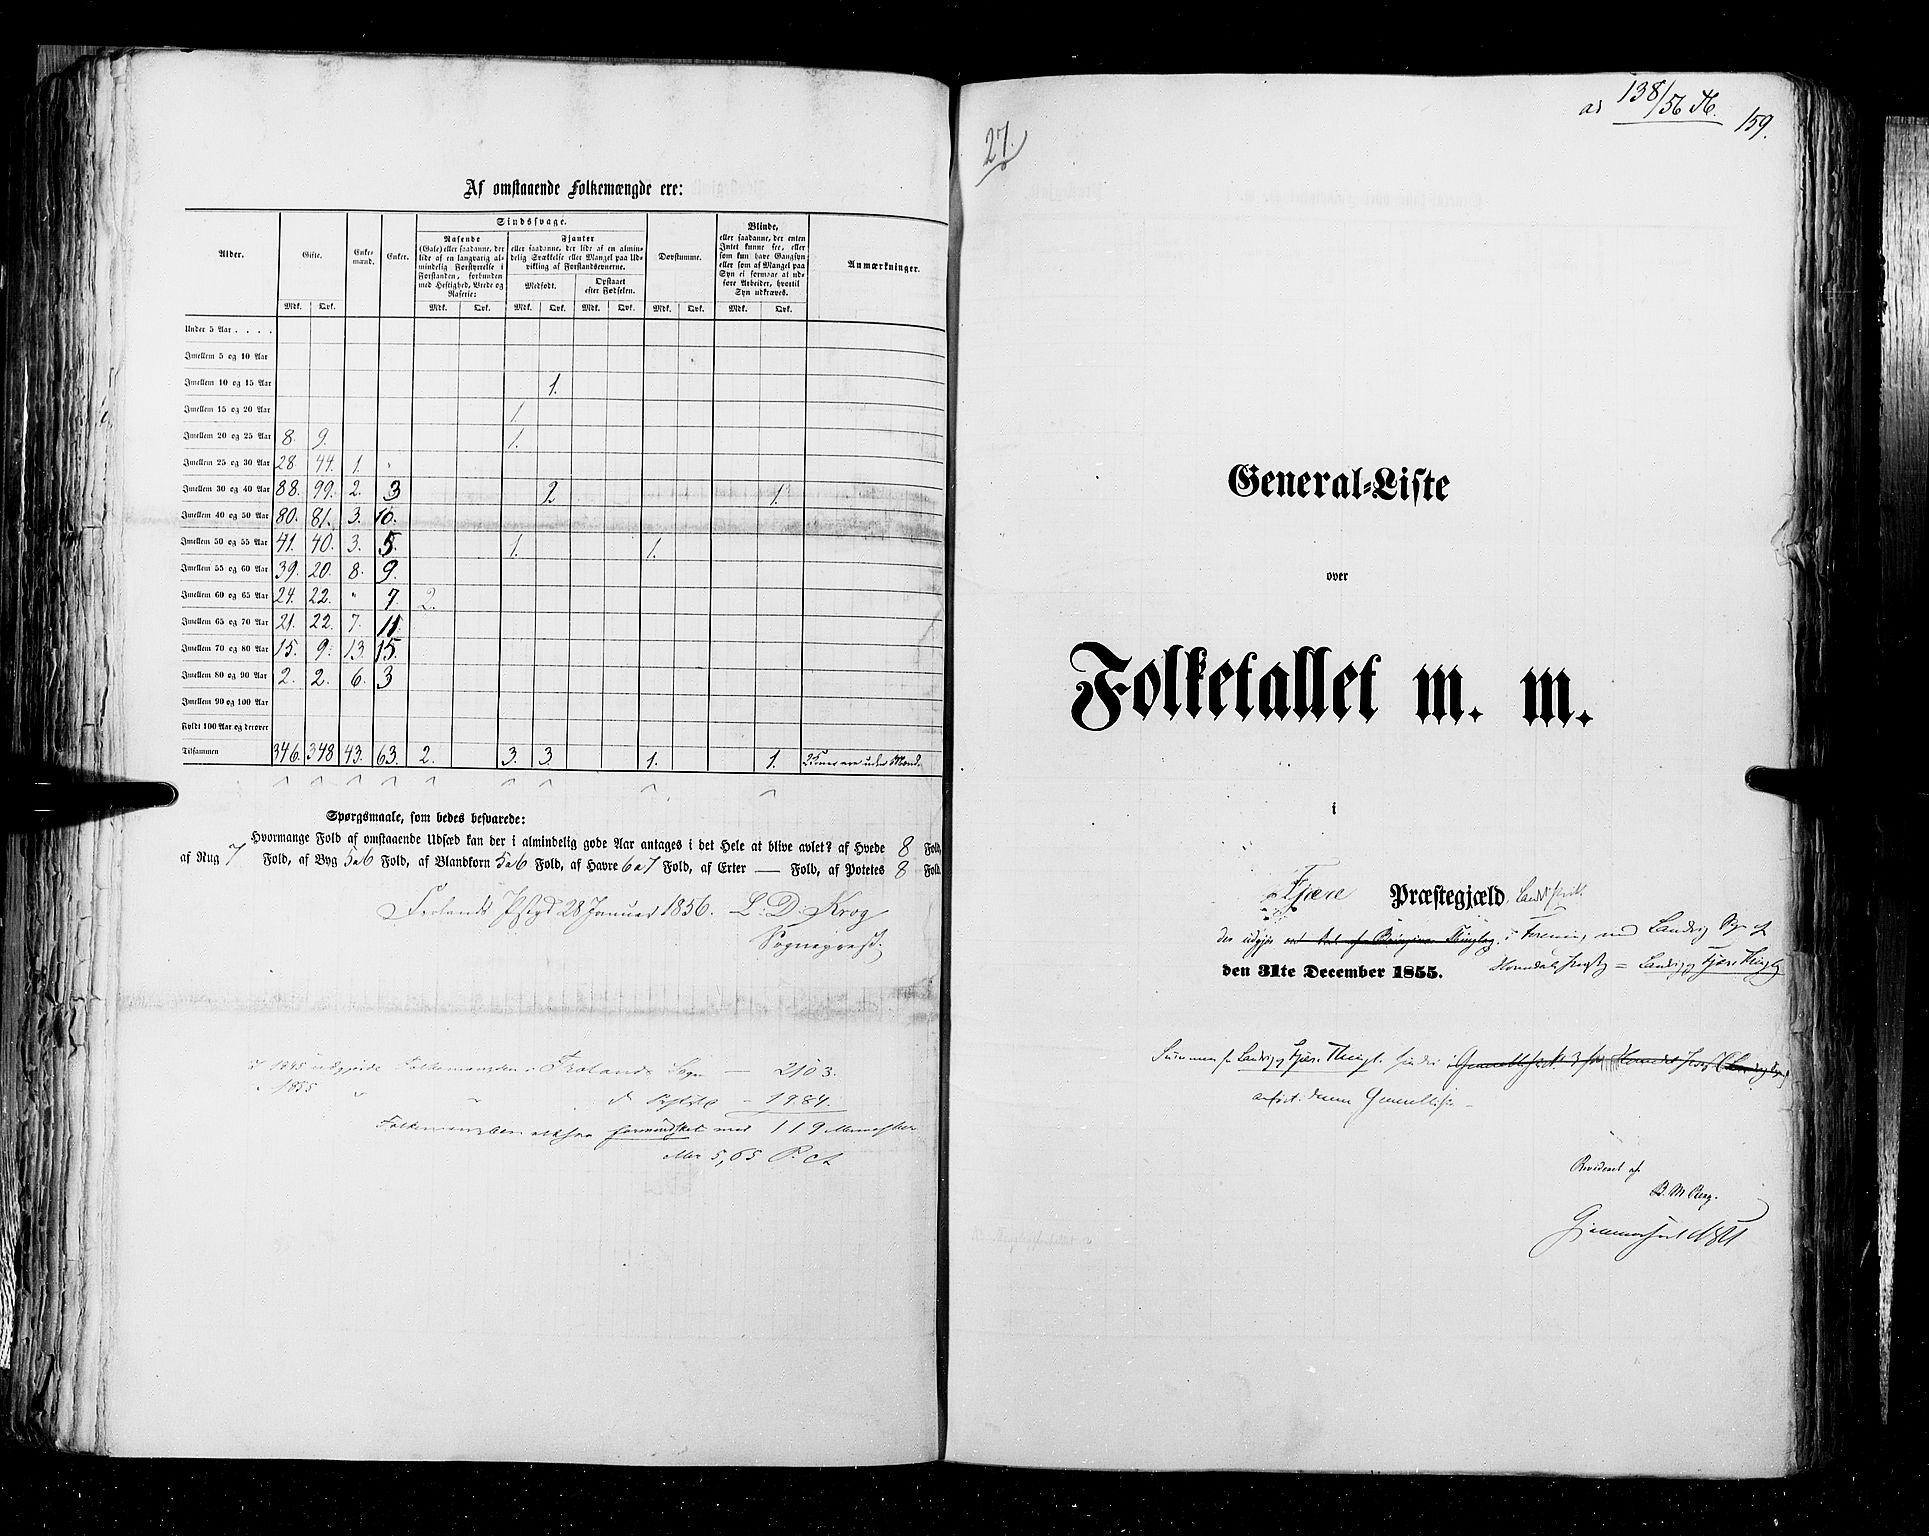 RA, Folketellingen 1855, bind 3: Bratsberg amt, Nedenes amt og Lister og Mandal amt, 1855, s. 159